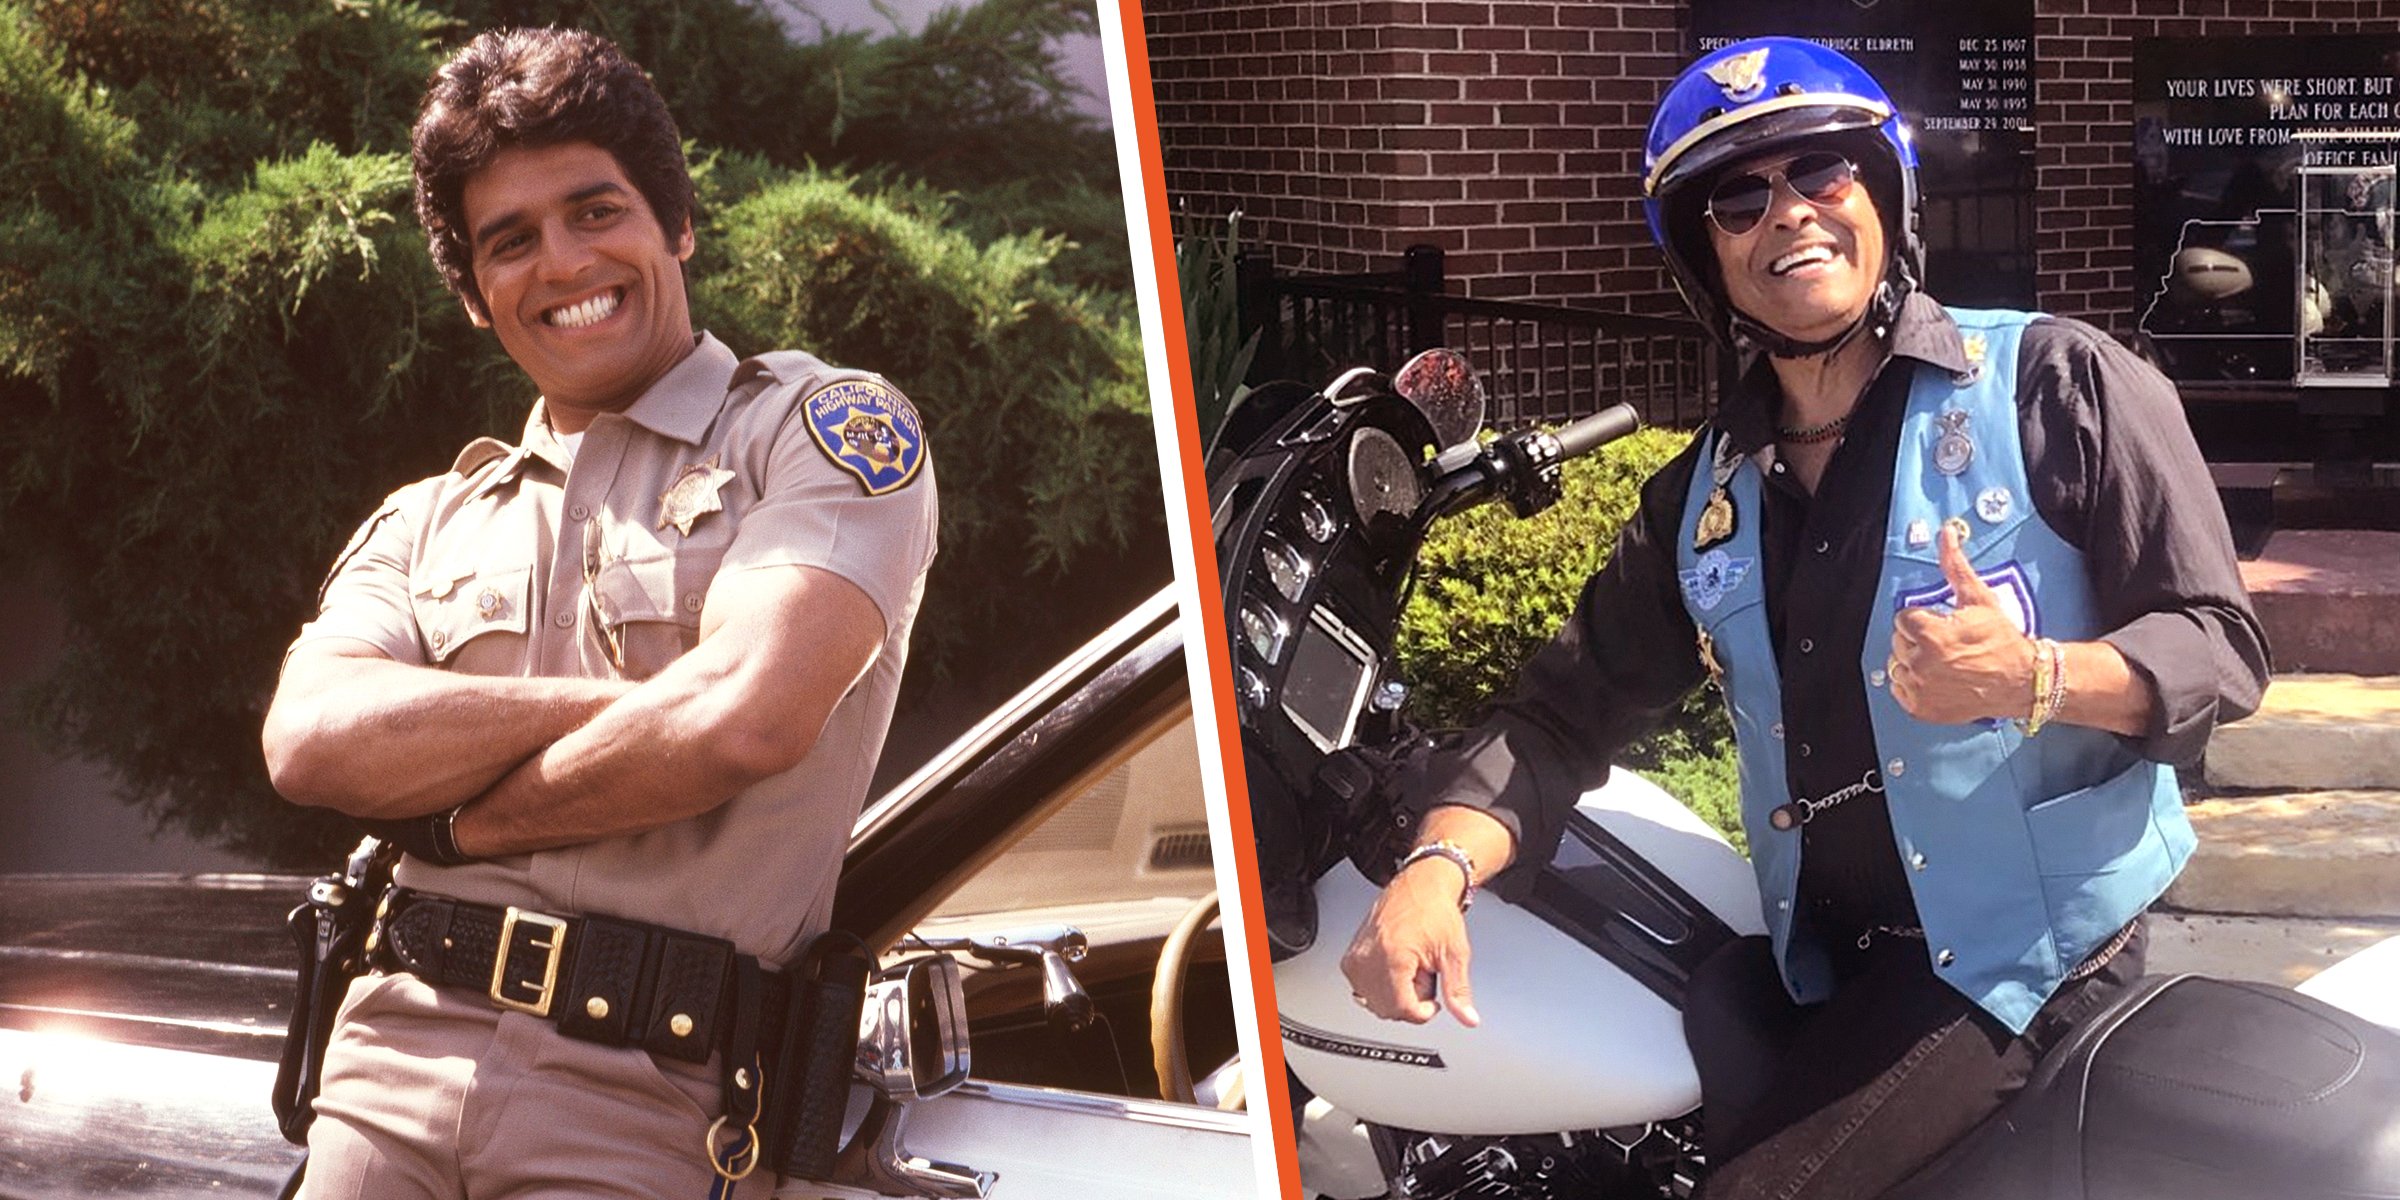 Erik Estrada en su papel de 'Ponch' en "CHiPs" [izquierda]; Erik Estrada sentado en su bicicleta mientras trabaja como un policía de la vida real [derecha]. | Foto: Getty Images - Twitter.com/ErikEstrada